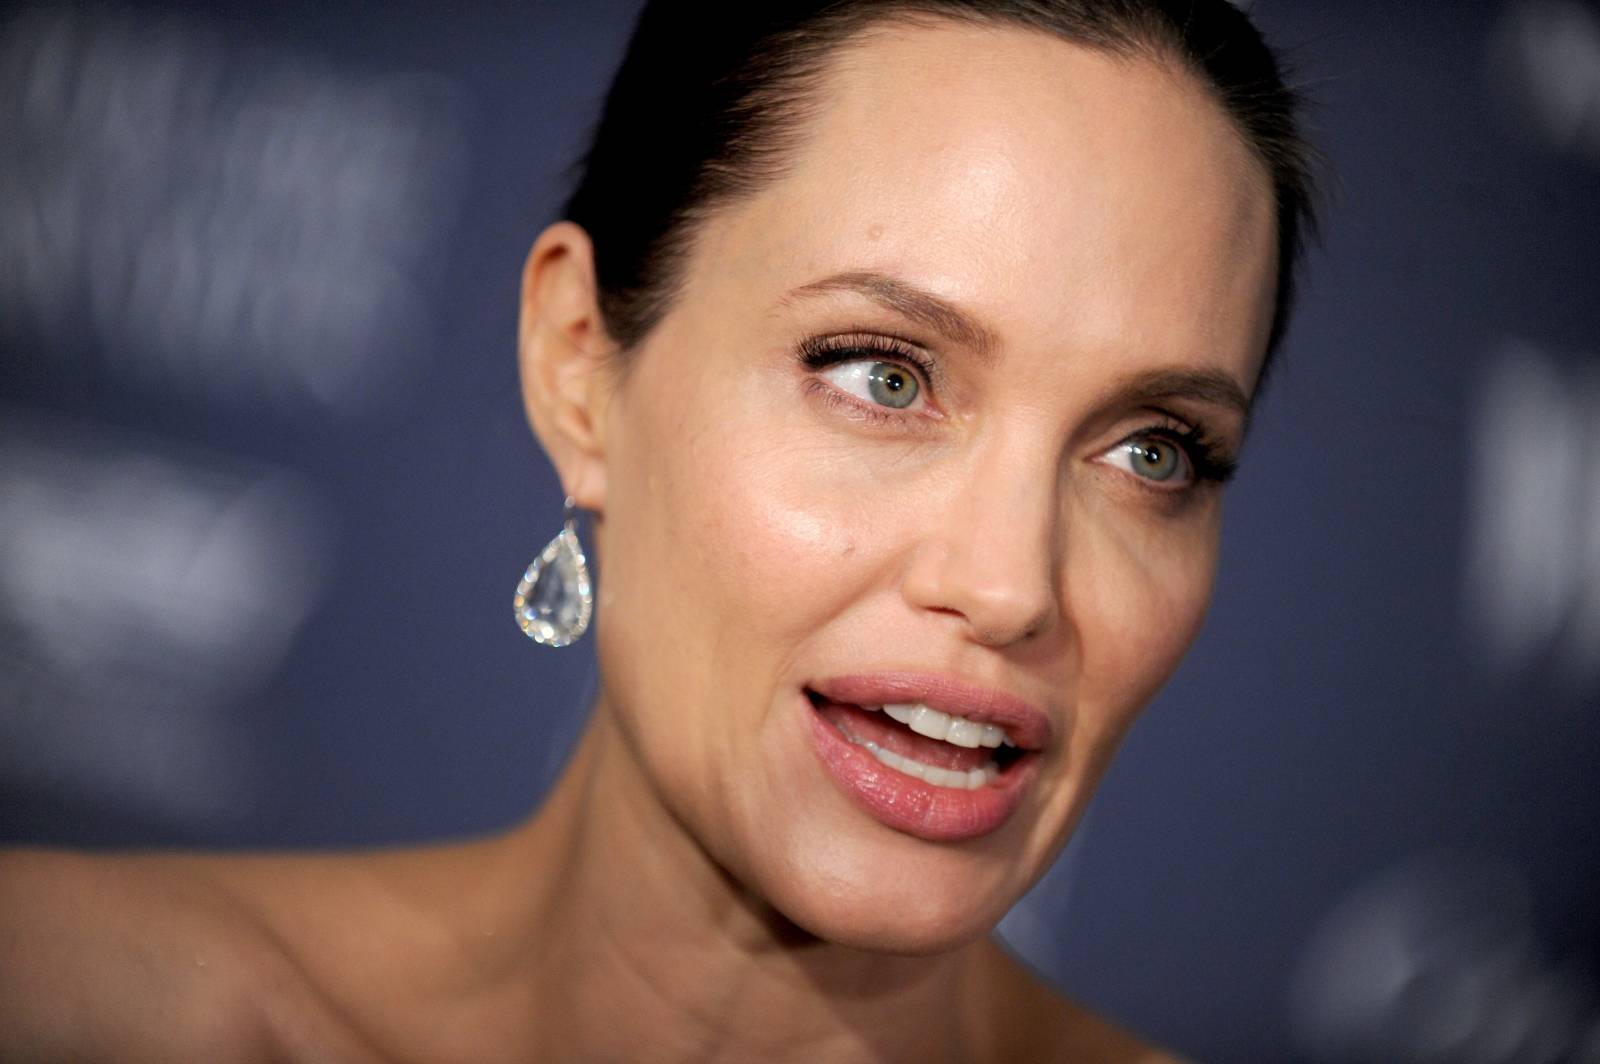 Angelina Jolie And Brad Pitt At Innovator Awards - NYC